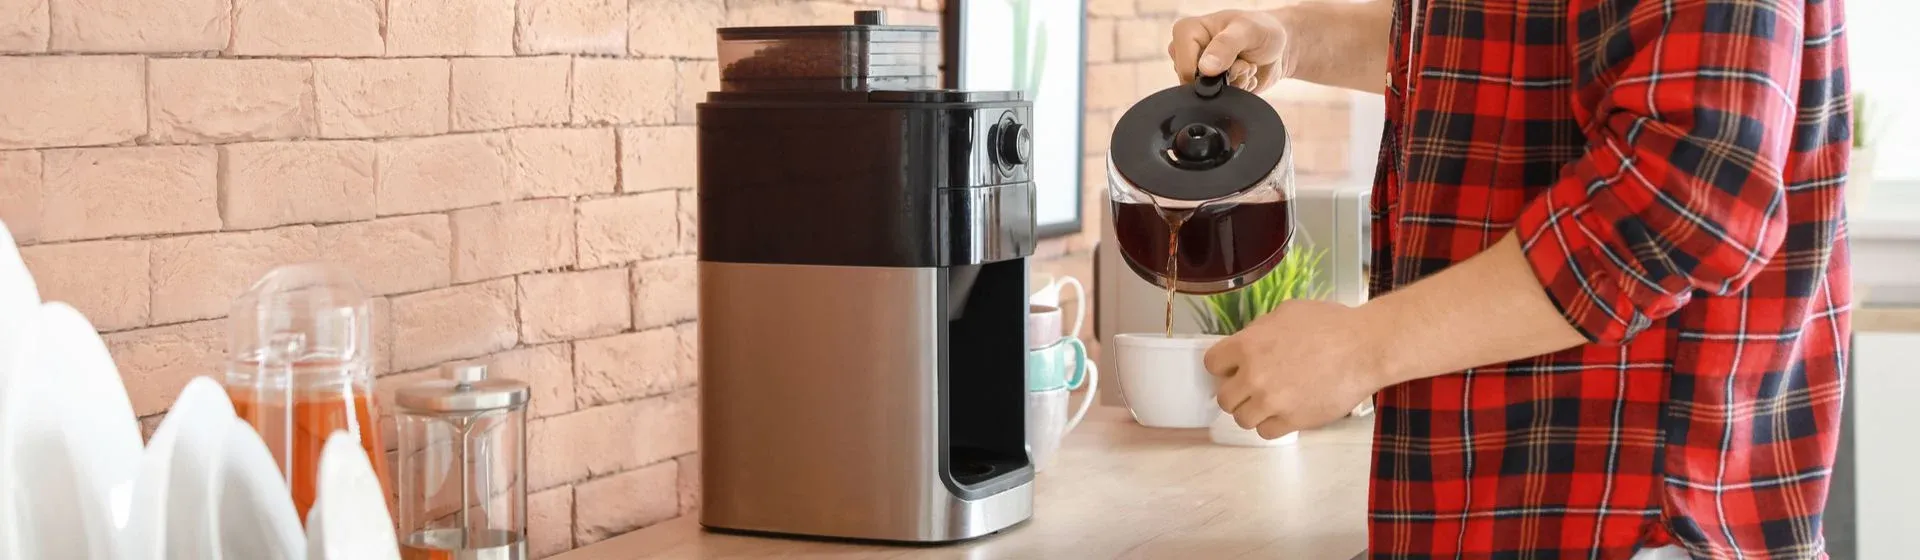 Como fazer café na cafeteira elétrica? Confira o passo a passo!